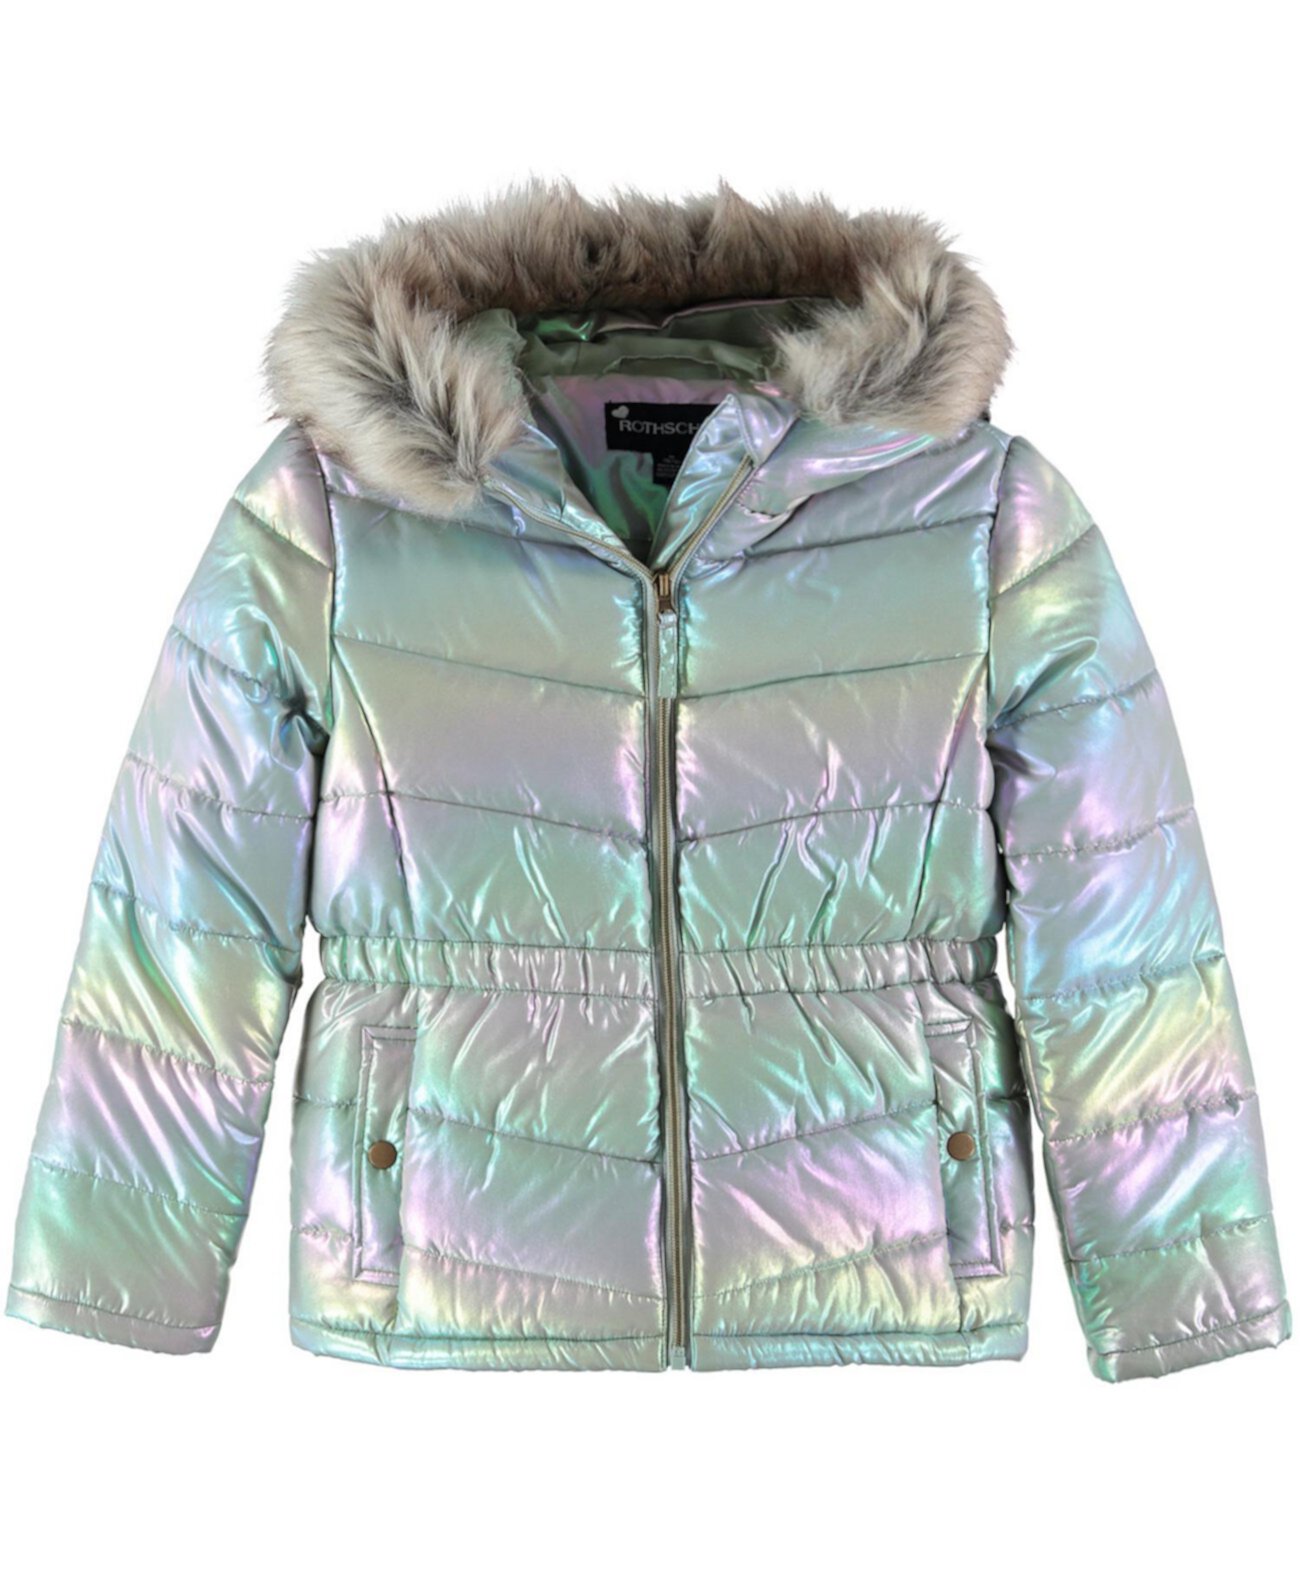 Куртка-парка с эффектом металлик для девочек Big Girls S Rothschild & CO